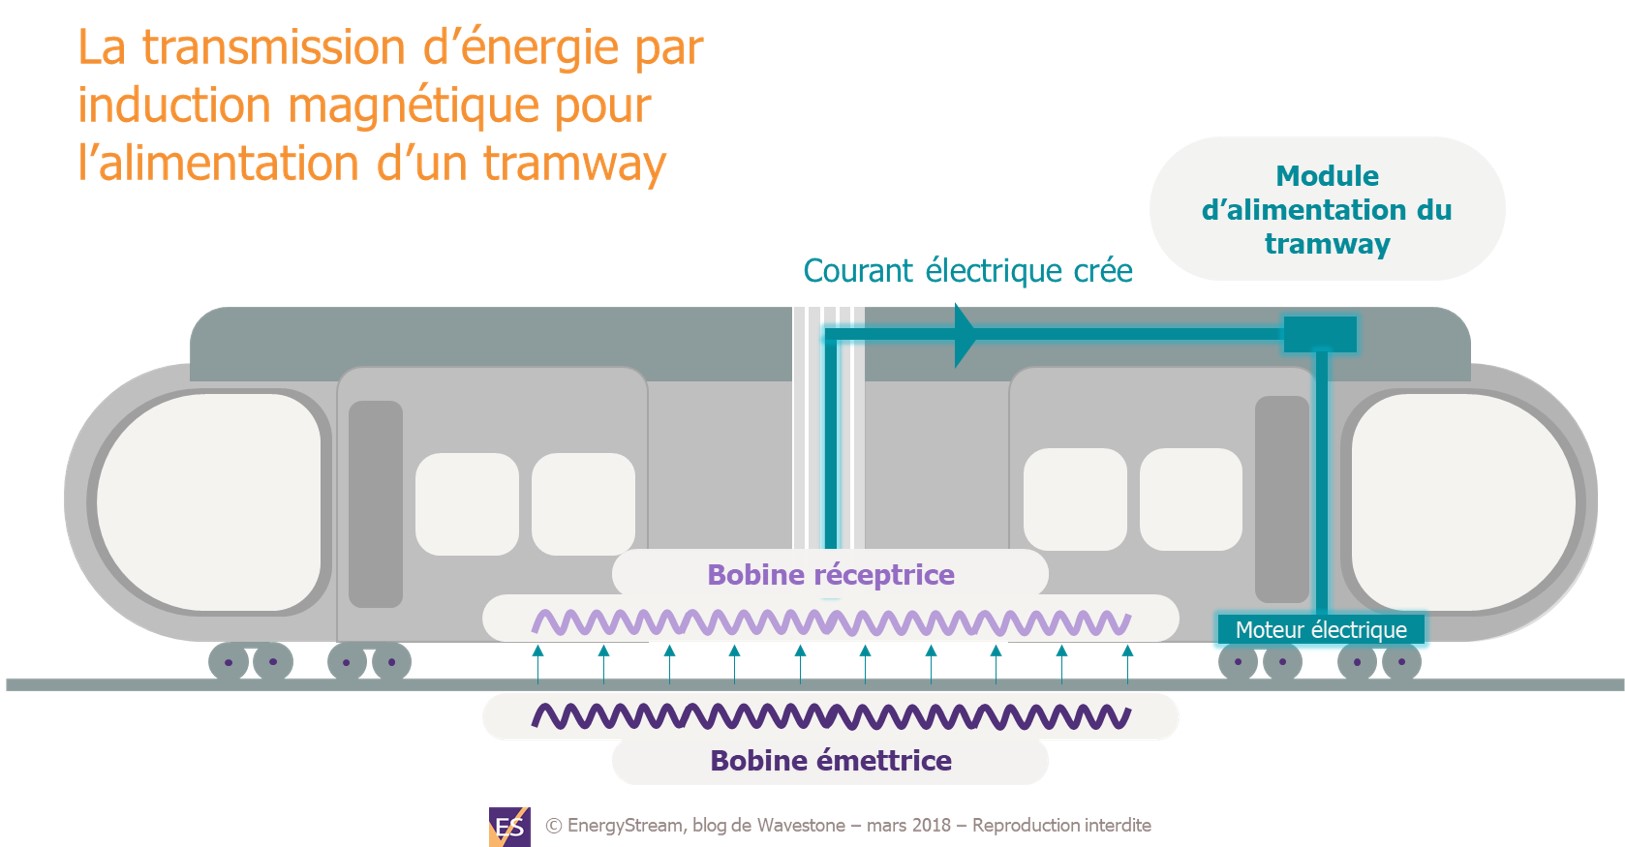 Transmission d'énergie par induction magnétique pour l'alimentation d'un tramway